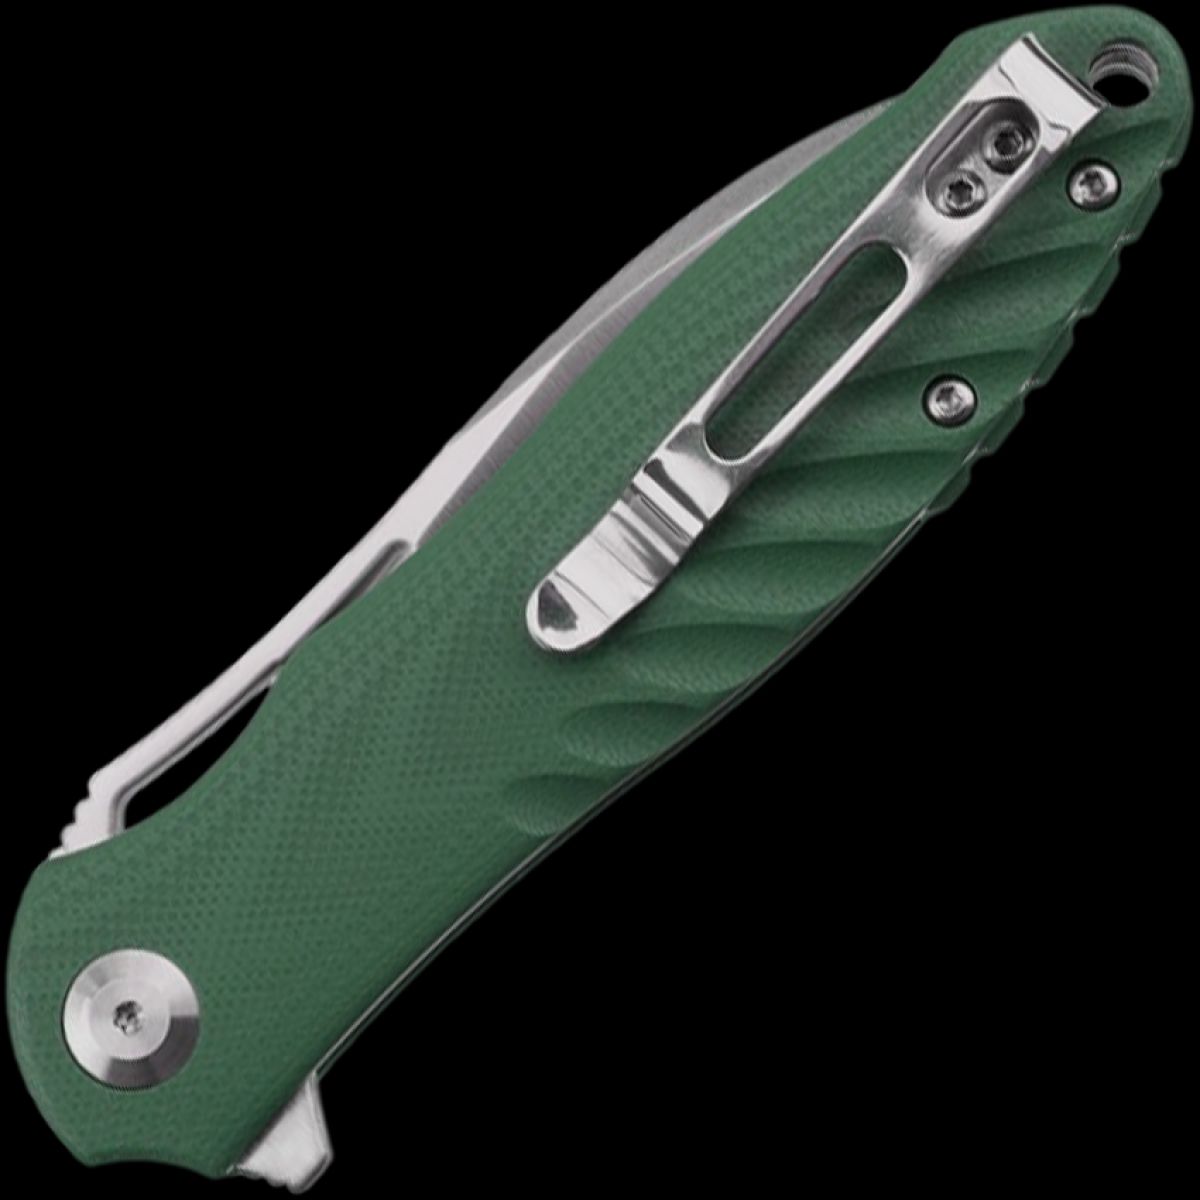 Ganzo Firebird FH71 brown-green folding knife